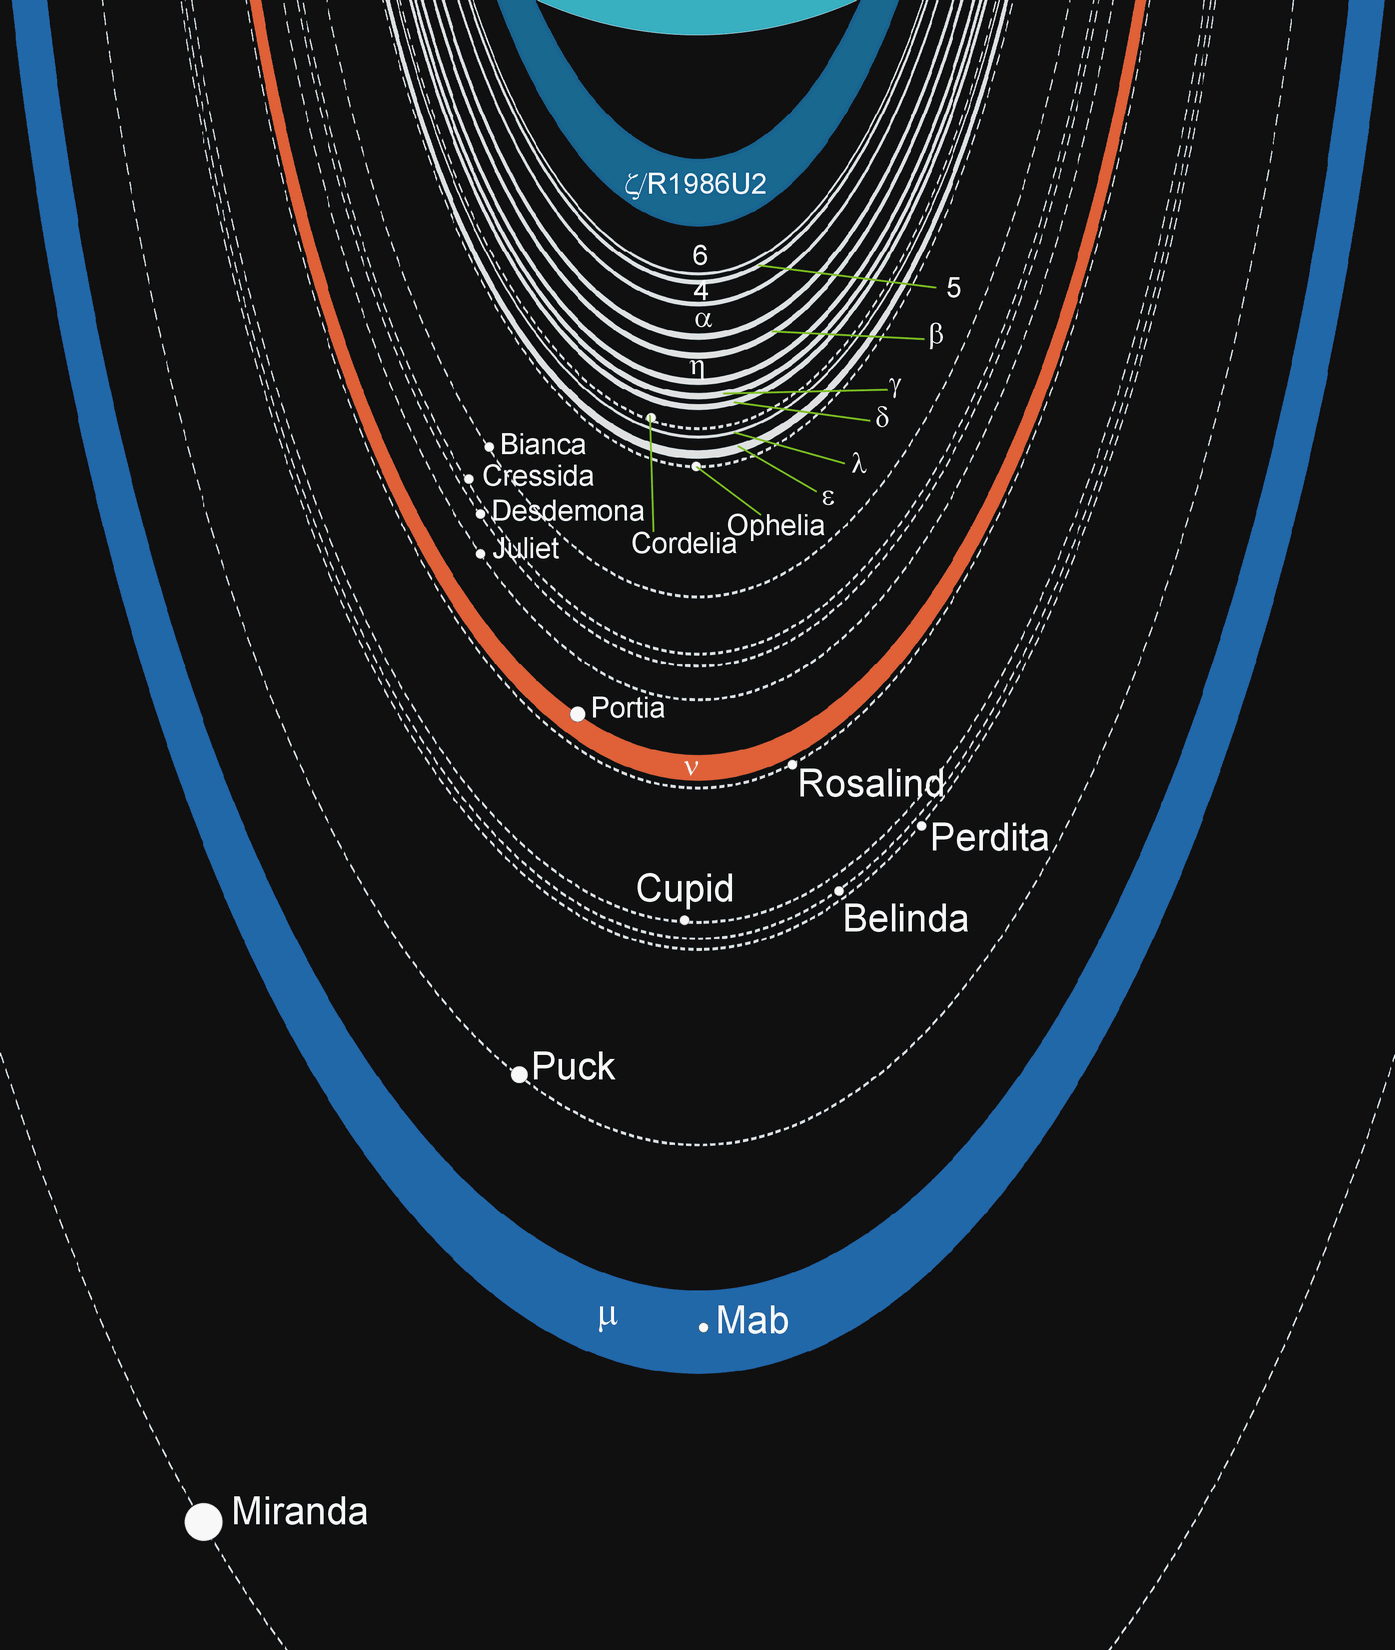 Das Ringsystem des Uranus (Schemazeichnung)